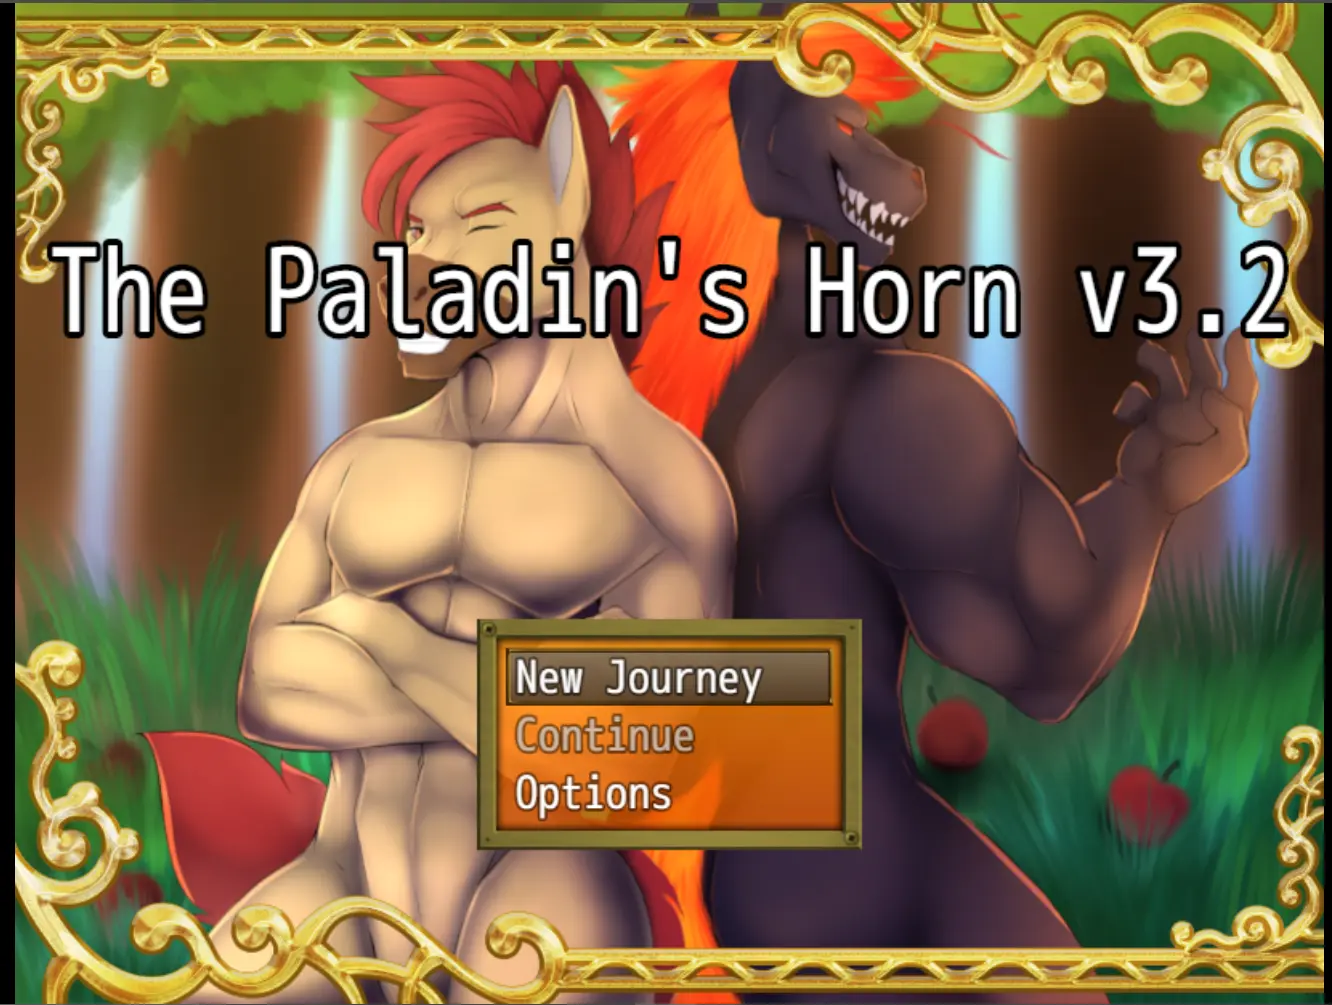 Paladin's Horn [v3.2] main image